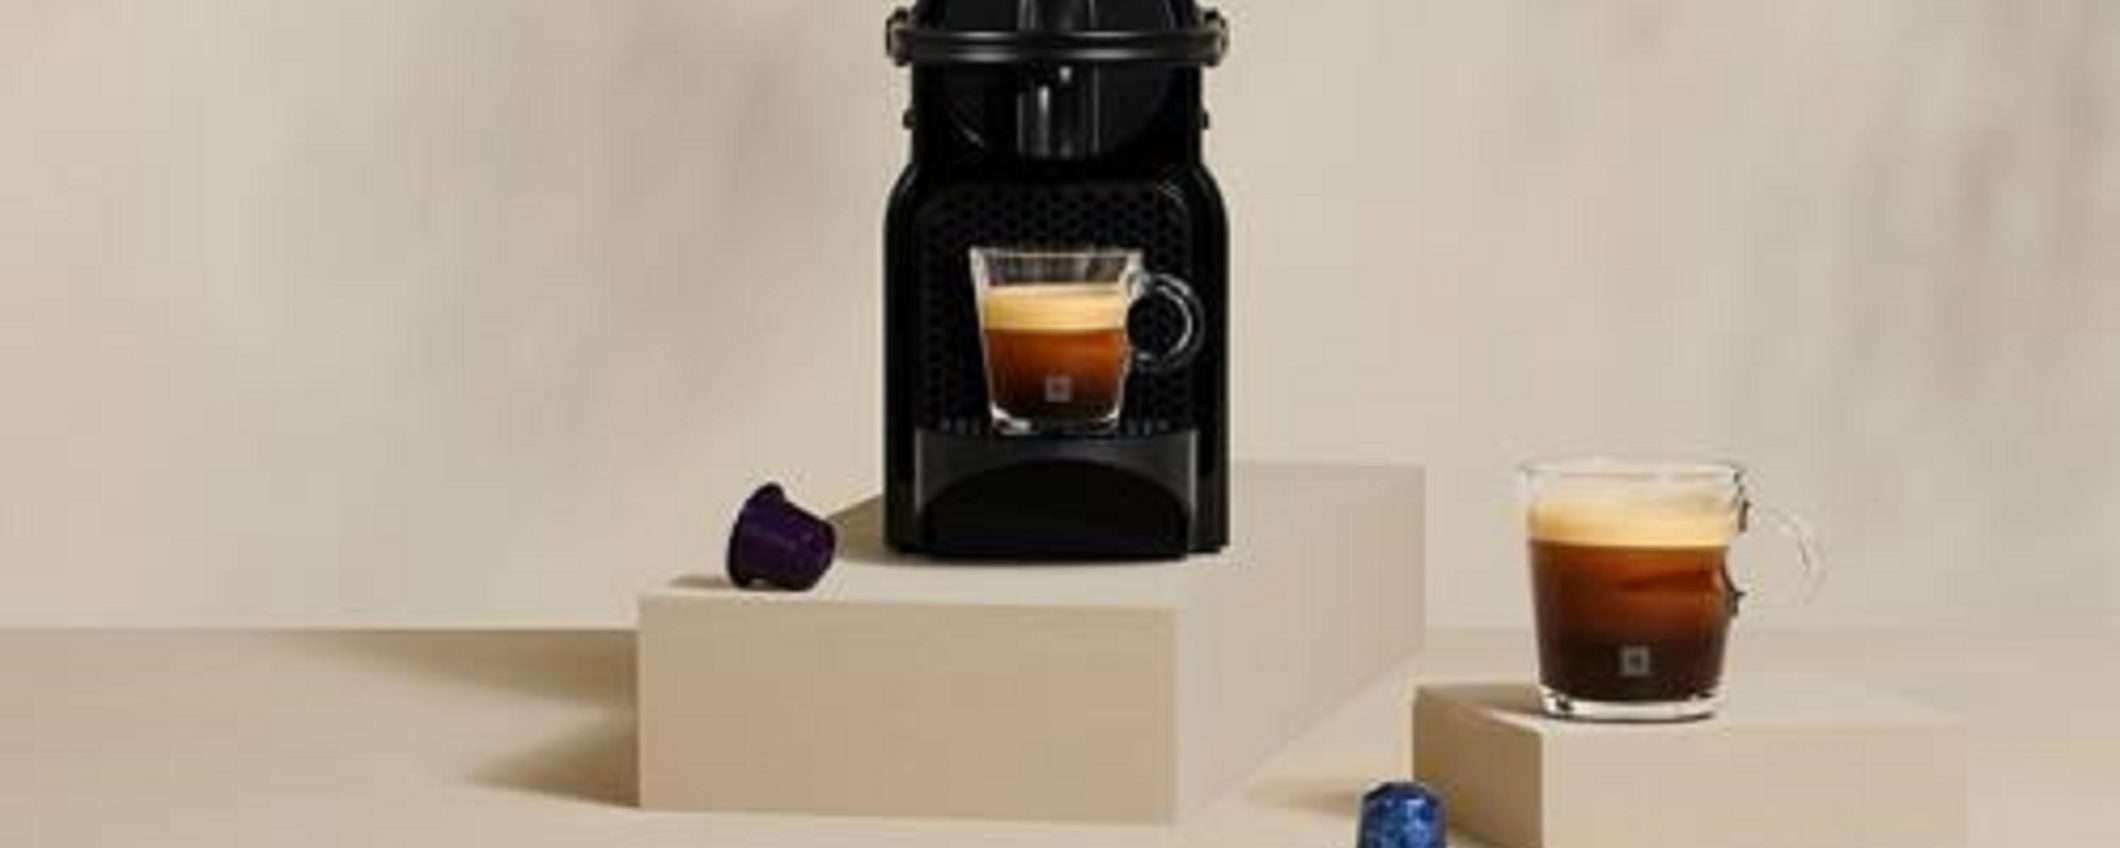 Macchina da caffè DeLonghi Nespresso Inissia in GRANDE promozione su Amazon (anche con 100 CAPSULE NESPRESSO)